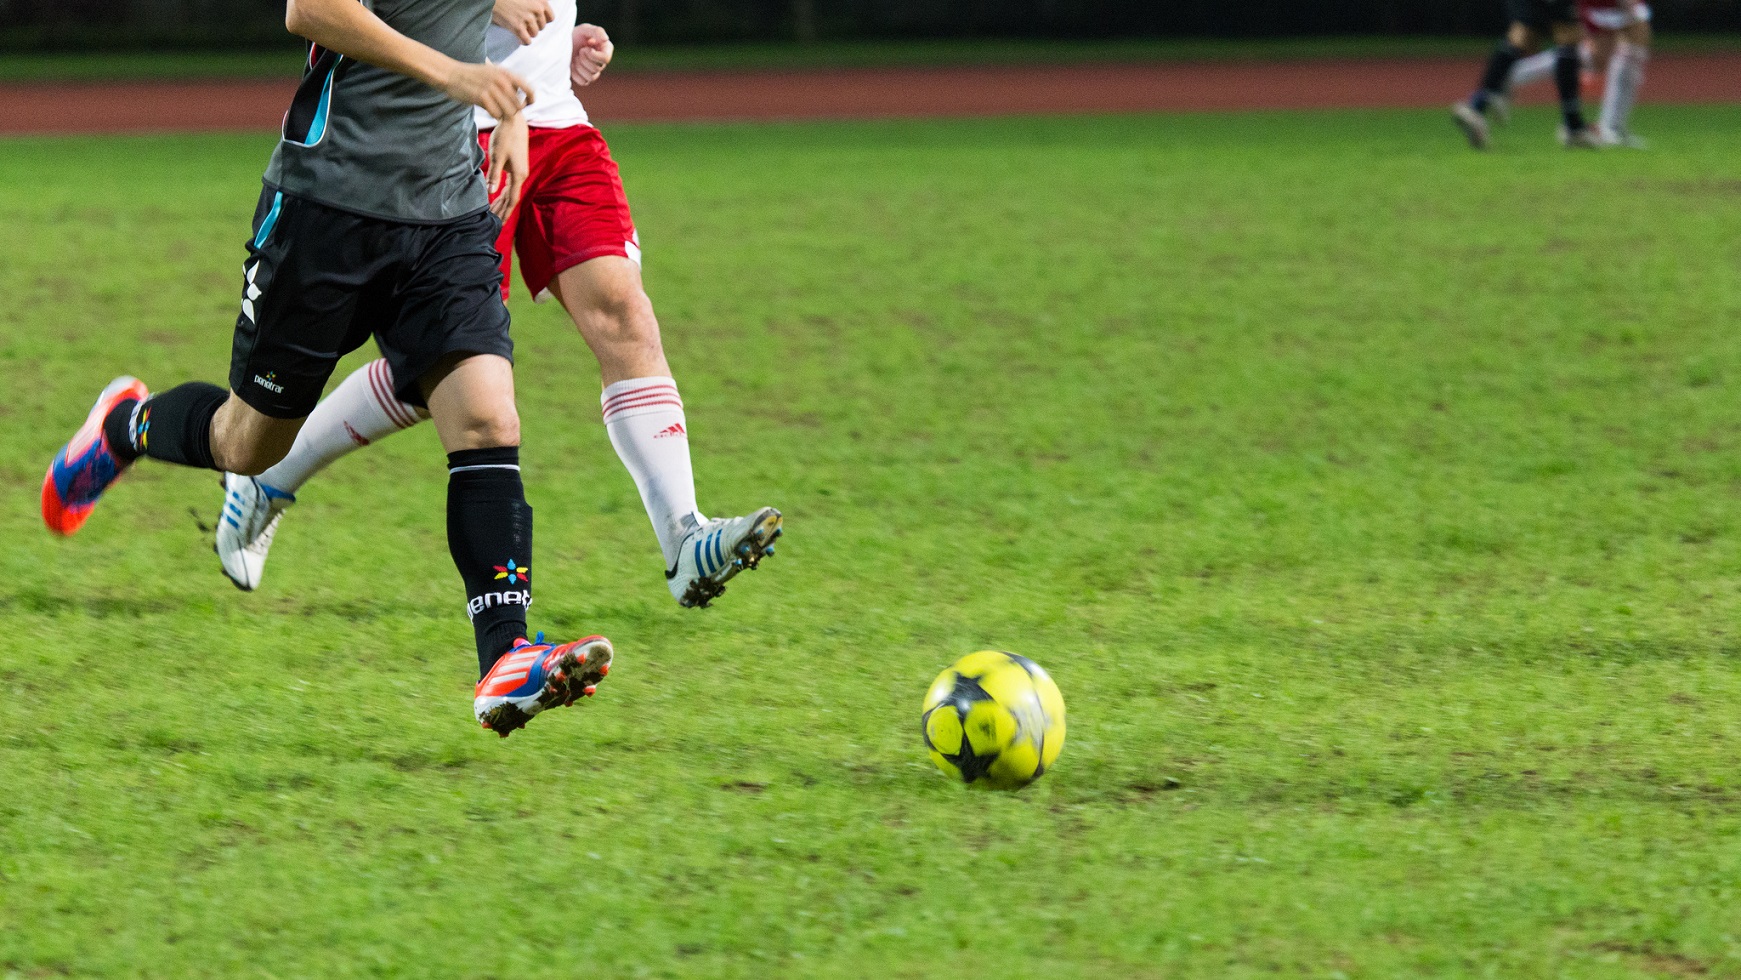 Les adducteurs sont sollicités lors de certains sports comme le football. © See-ming Lee, Flickr, CC by 2.0